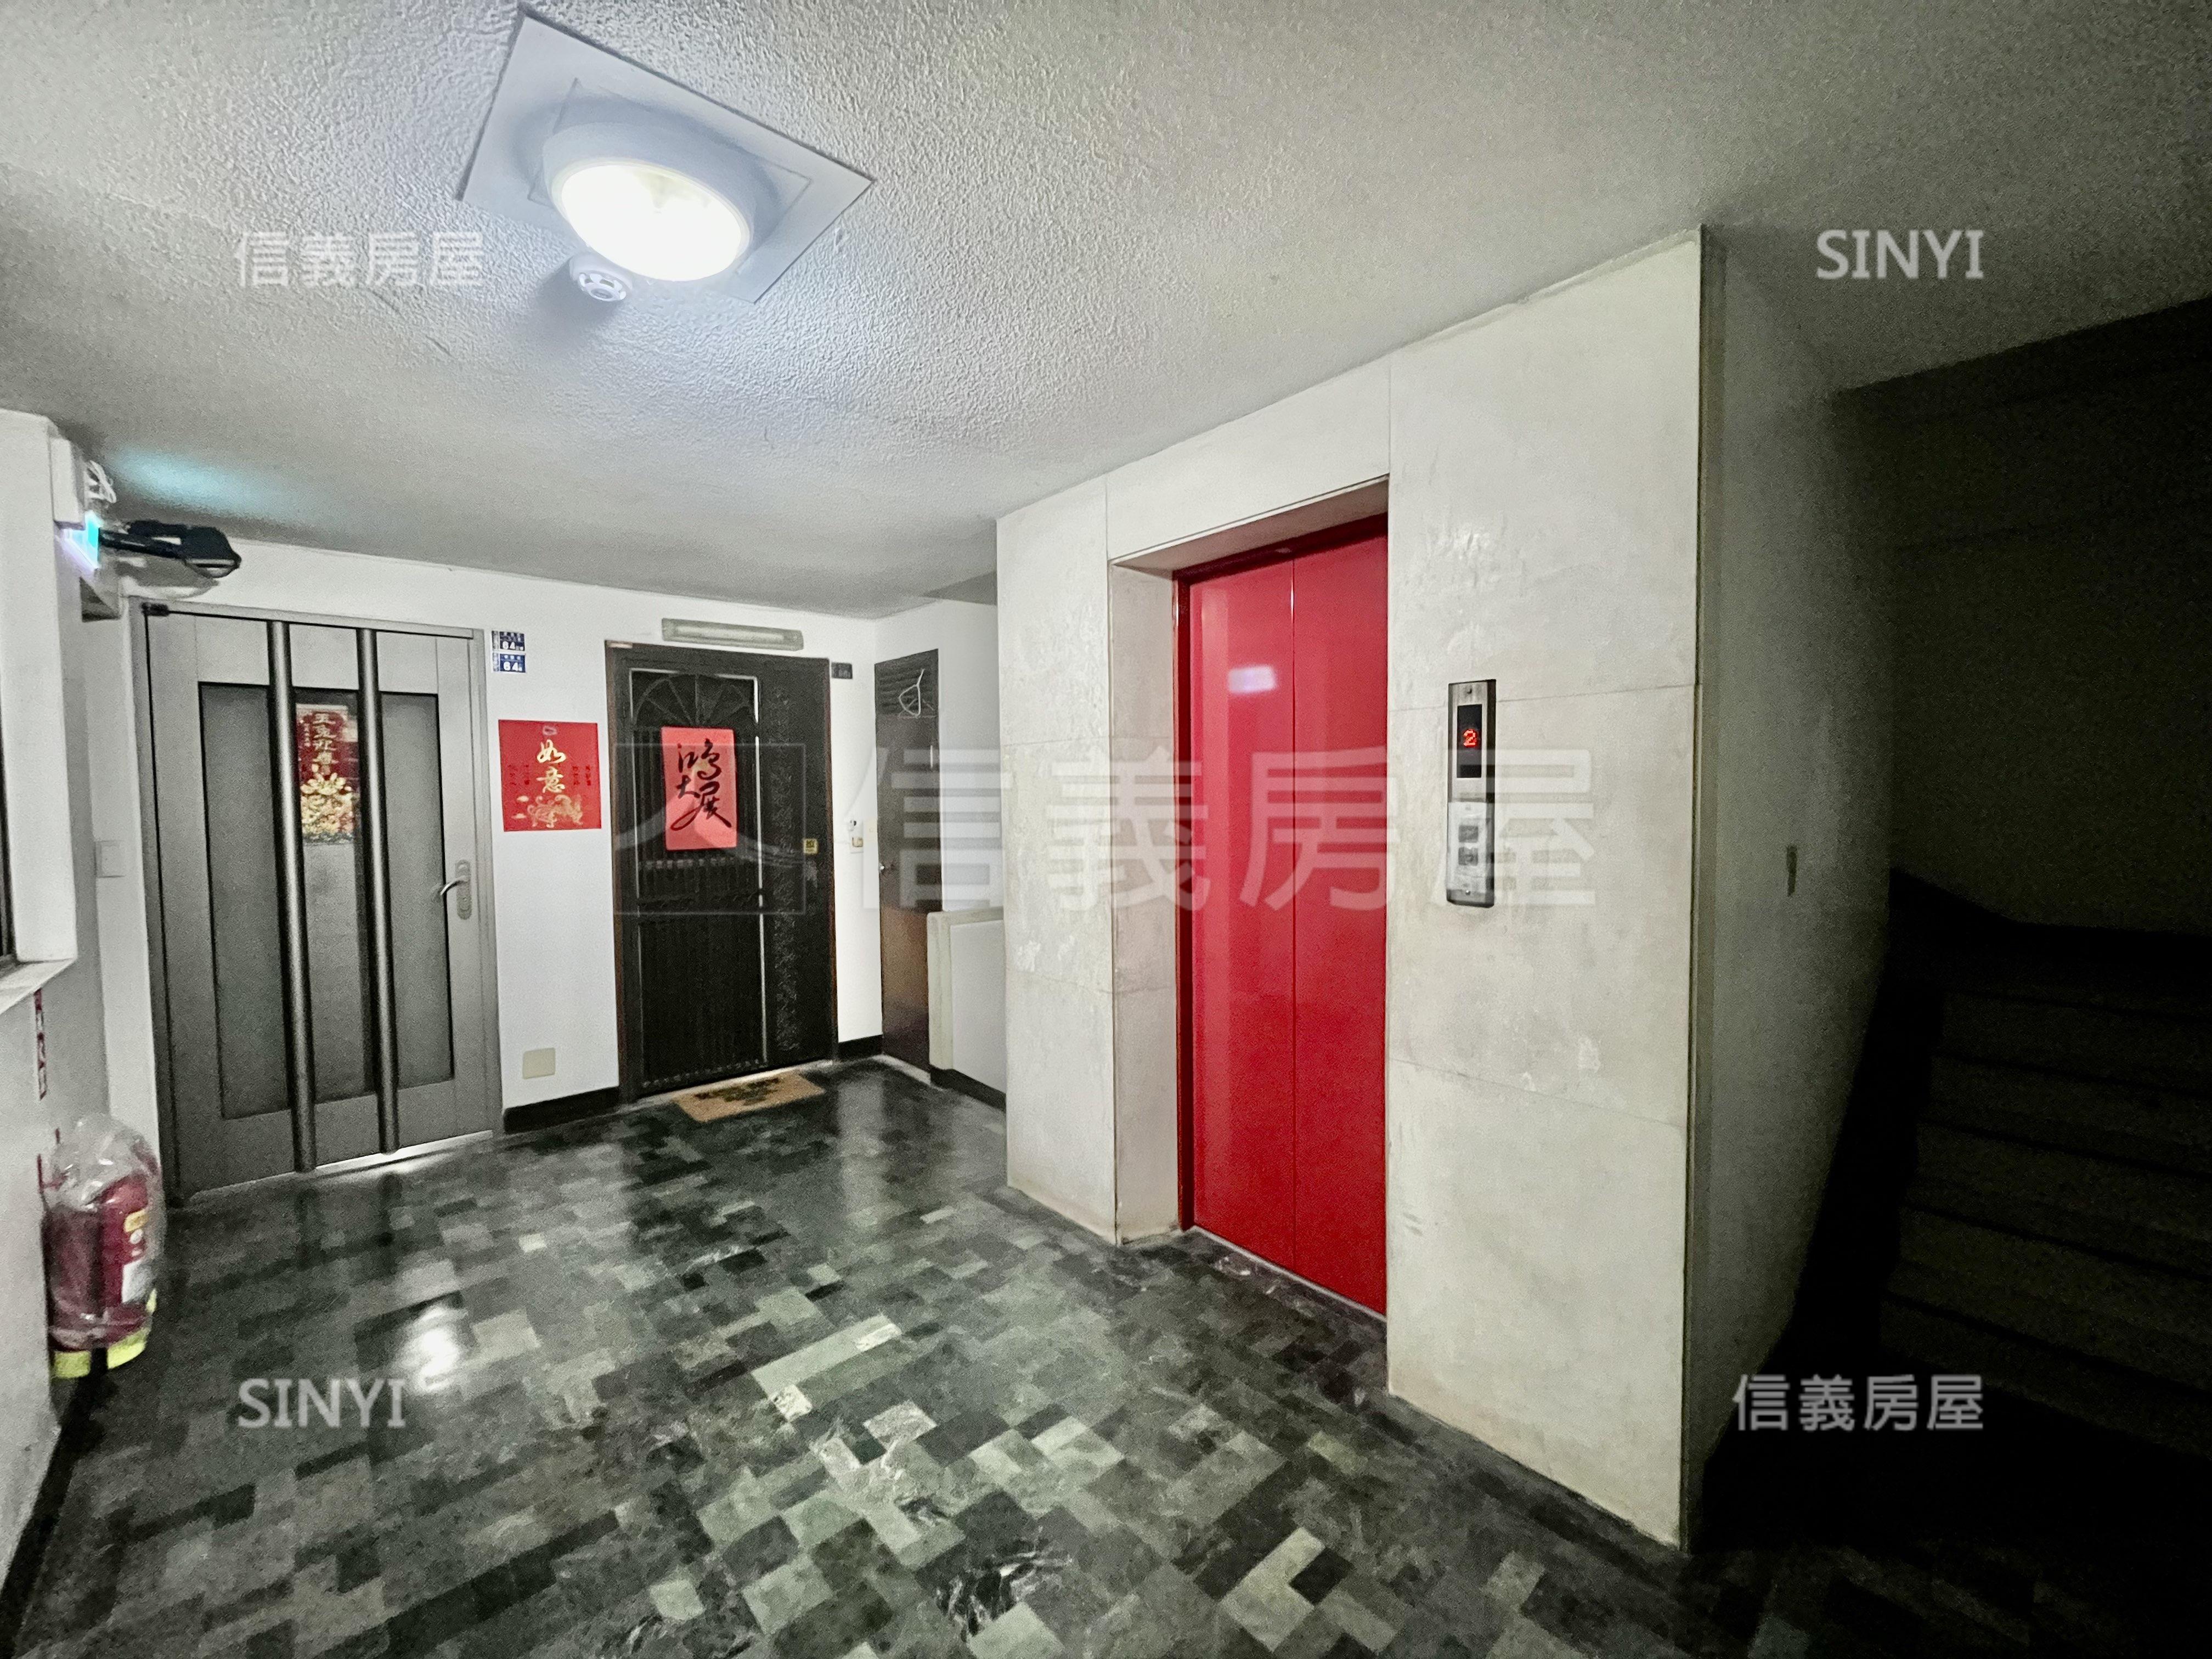 仁愛圓環電梯管理住辦房屋室內格局與周邊環境